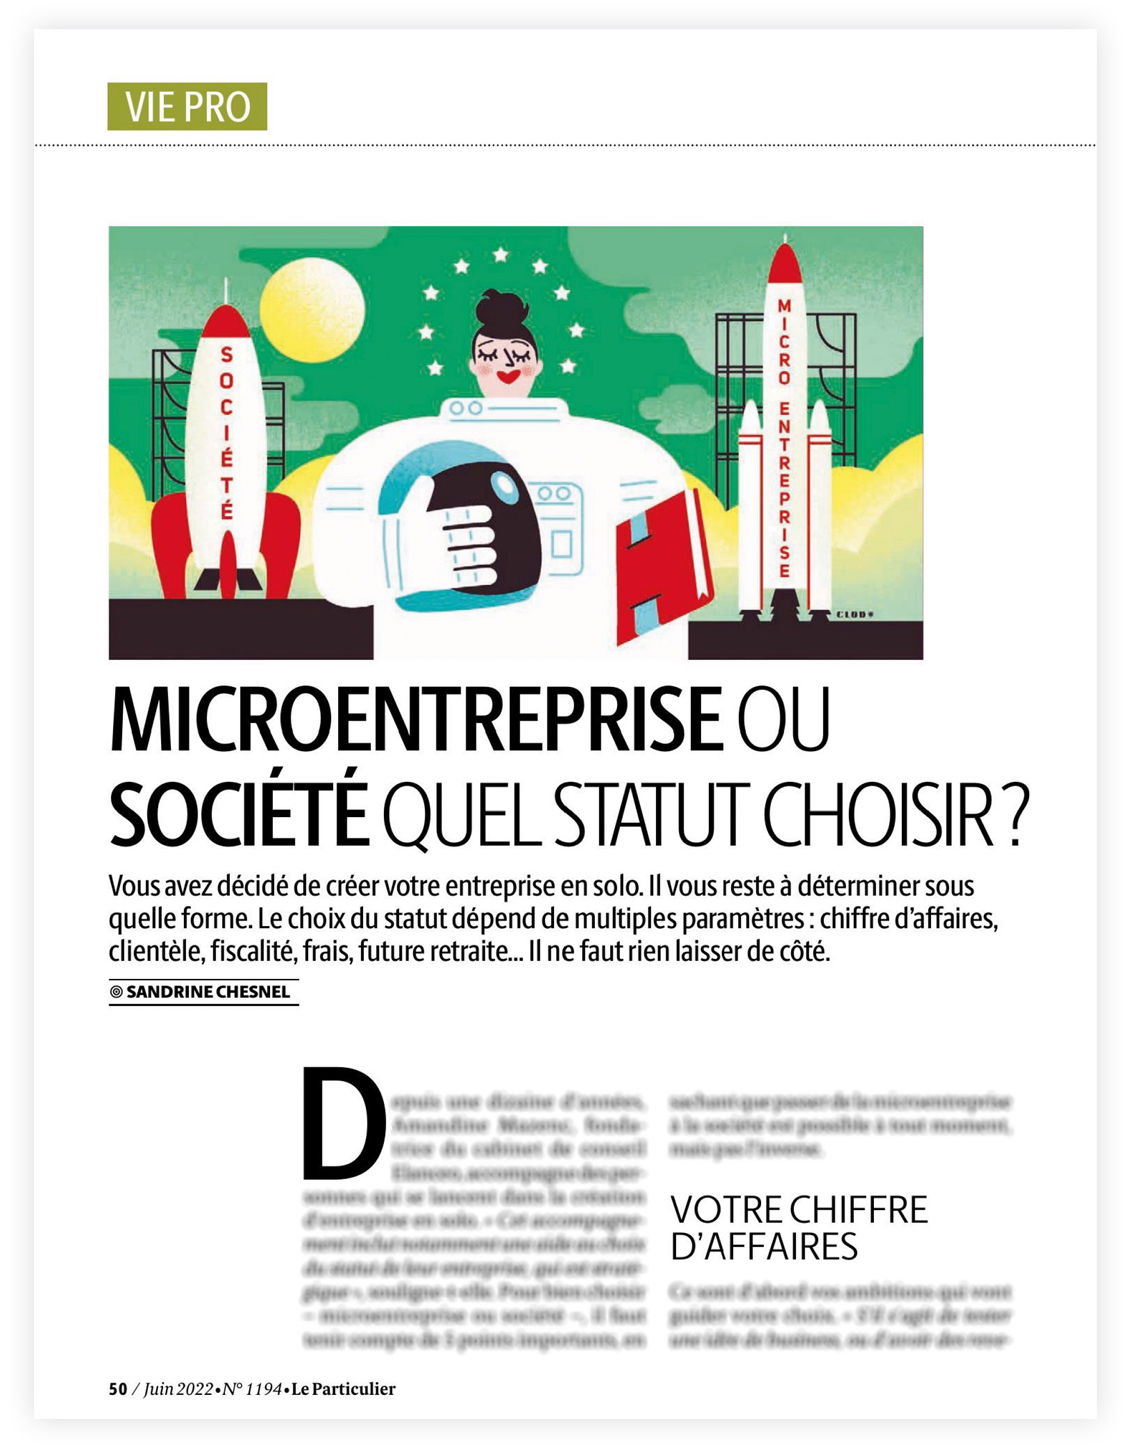 Clod illustration Le Particulier 1194 : Microentreprise ou société, quel statut choisir ?